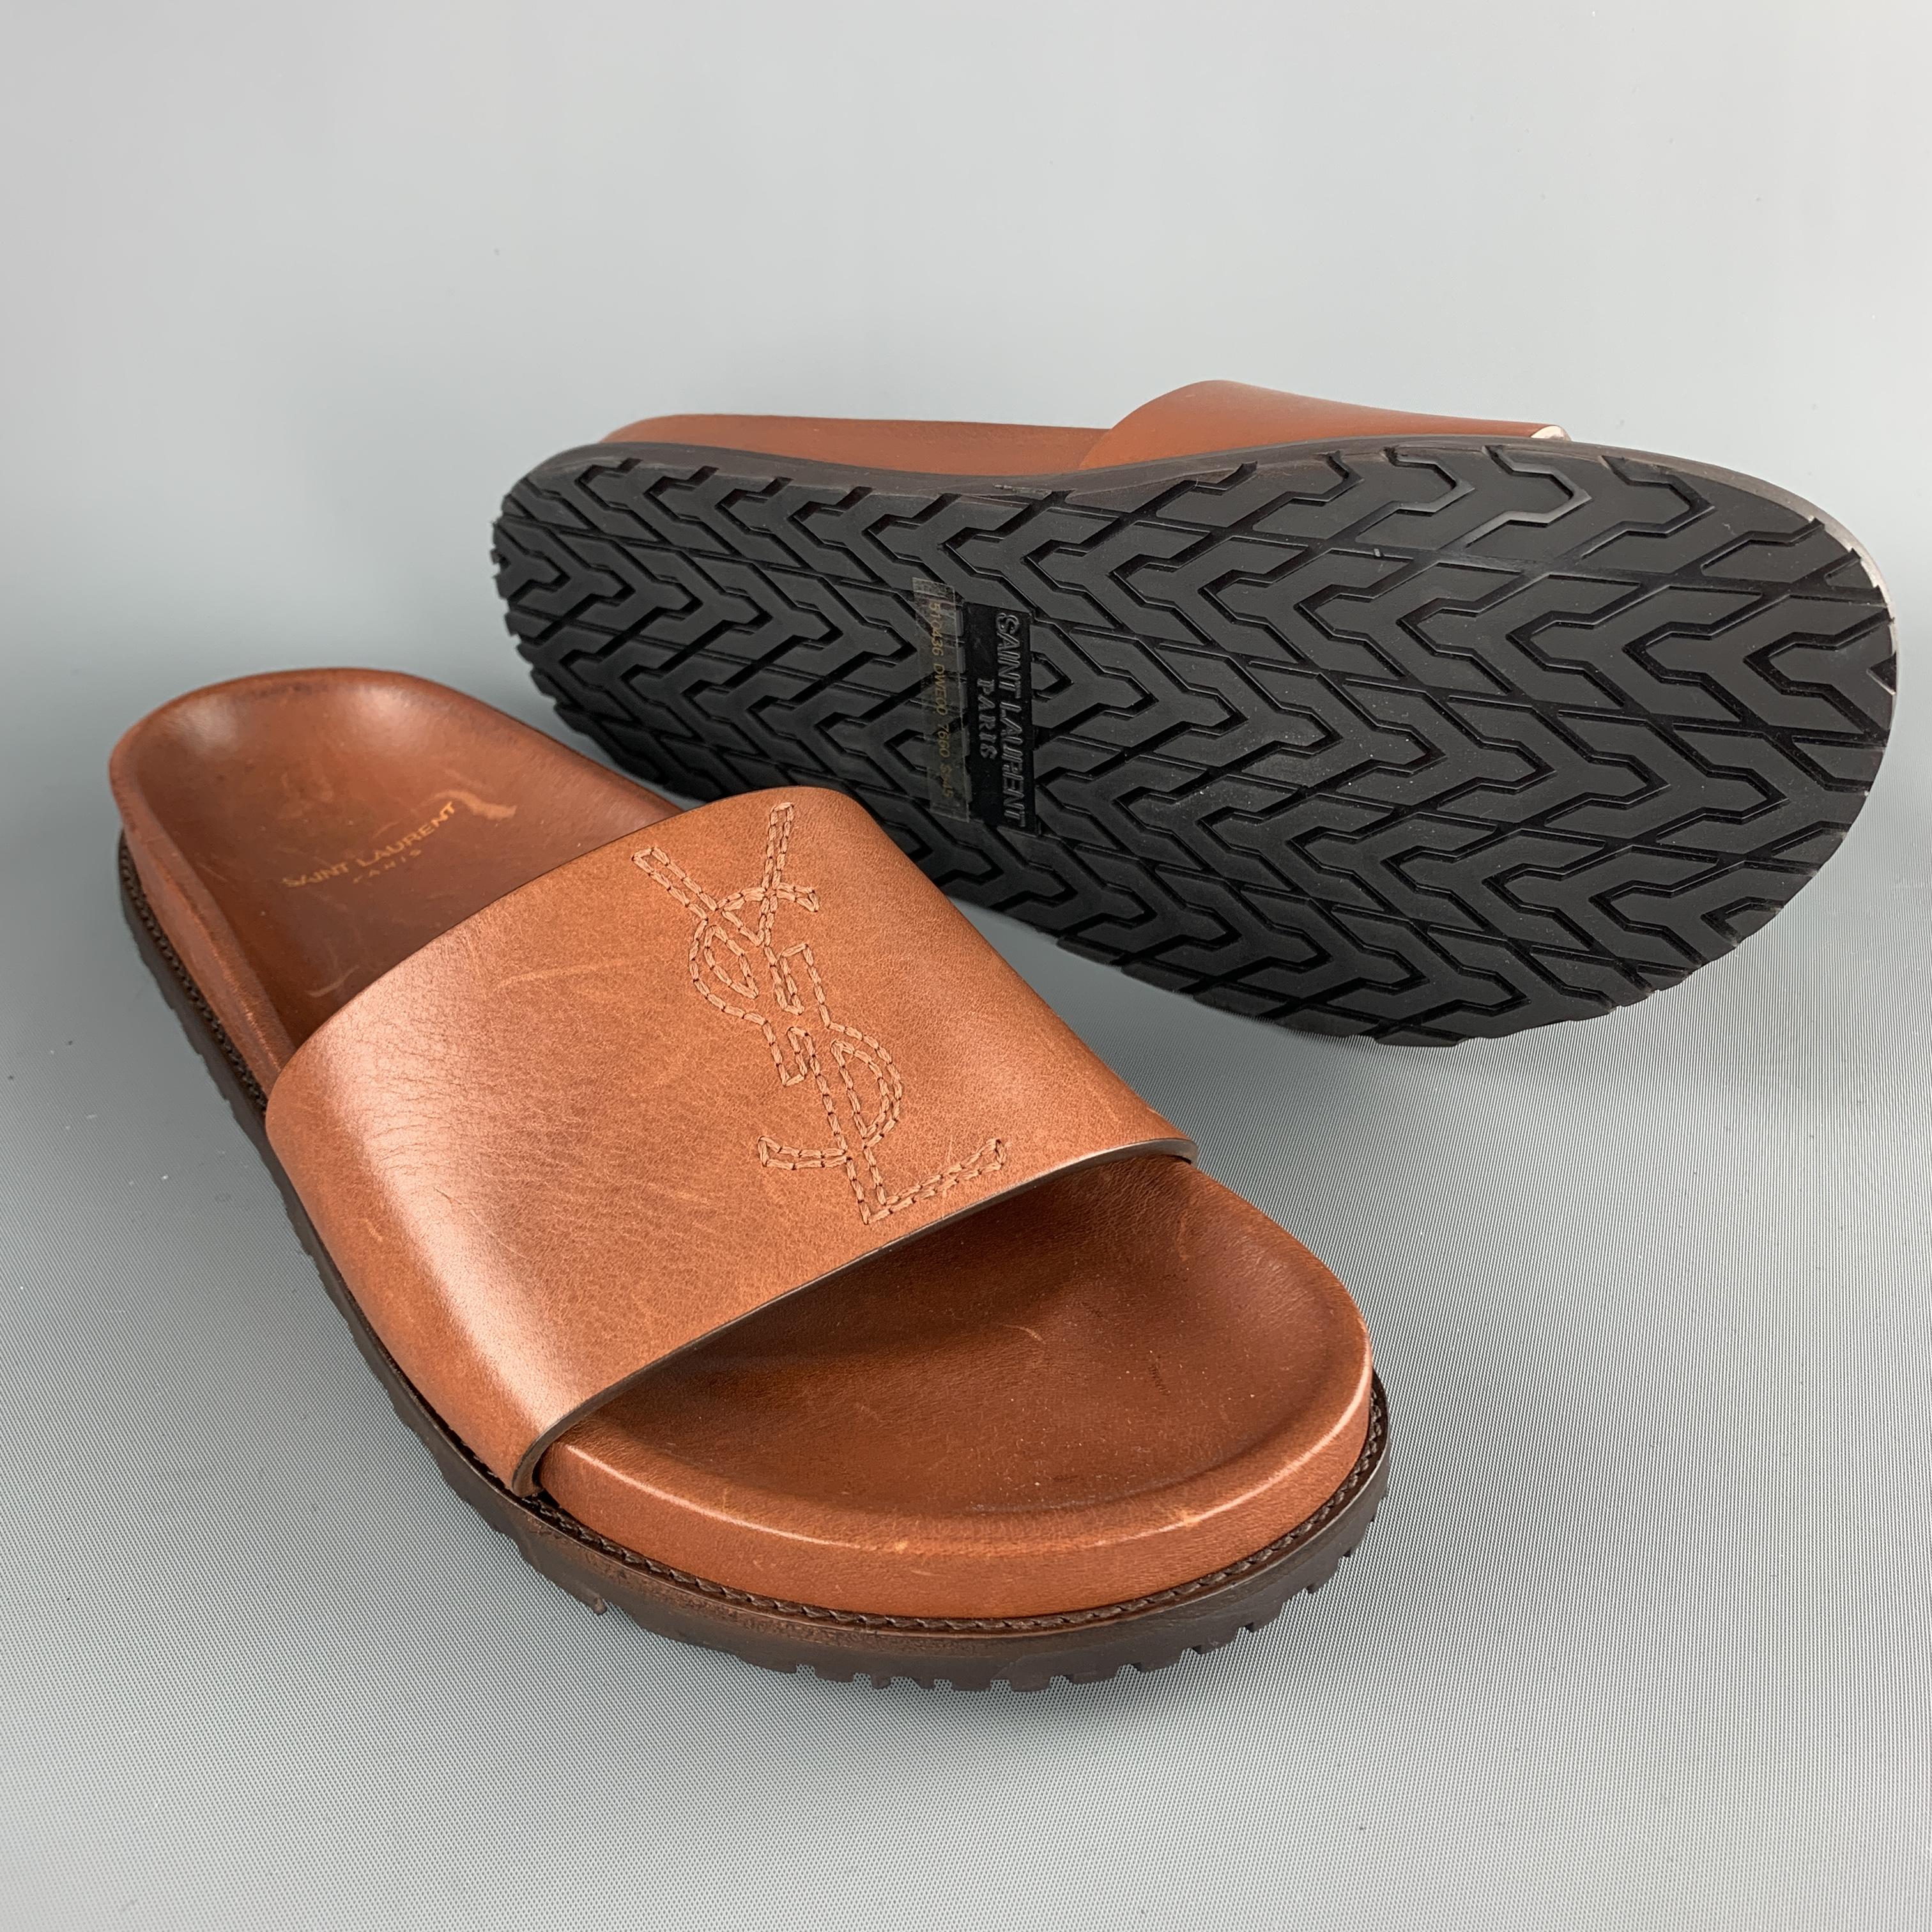 ysl leather slides